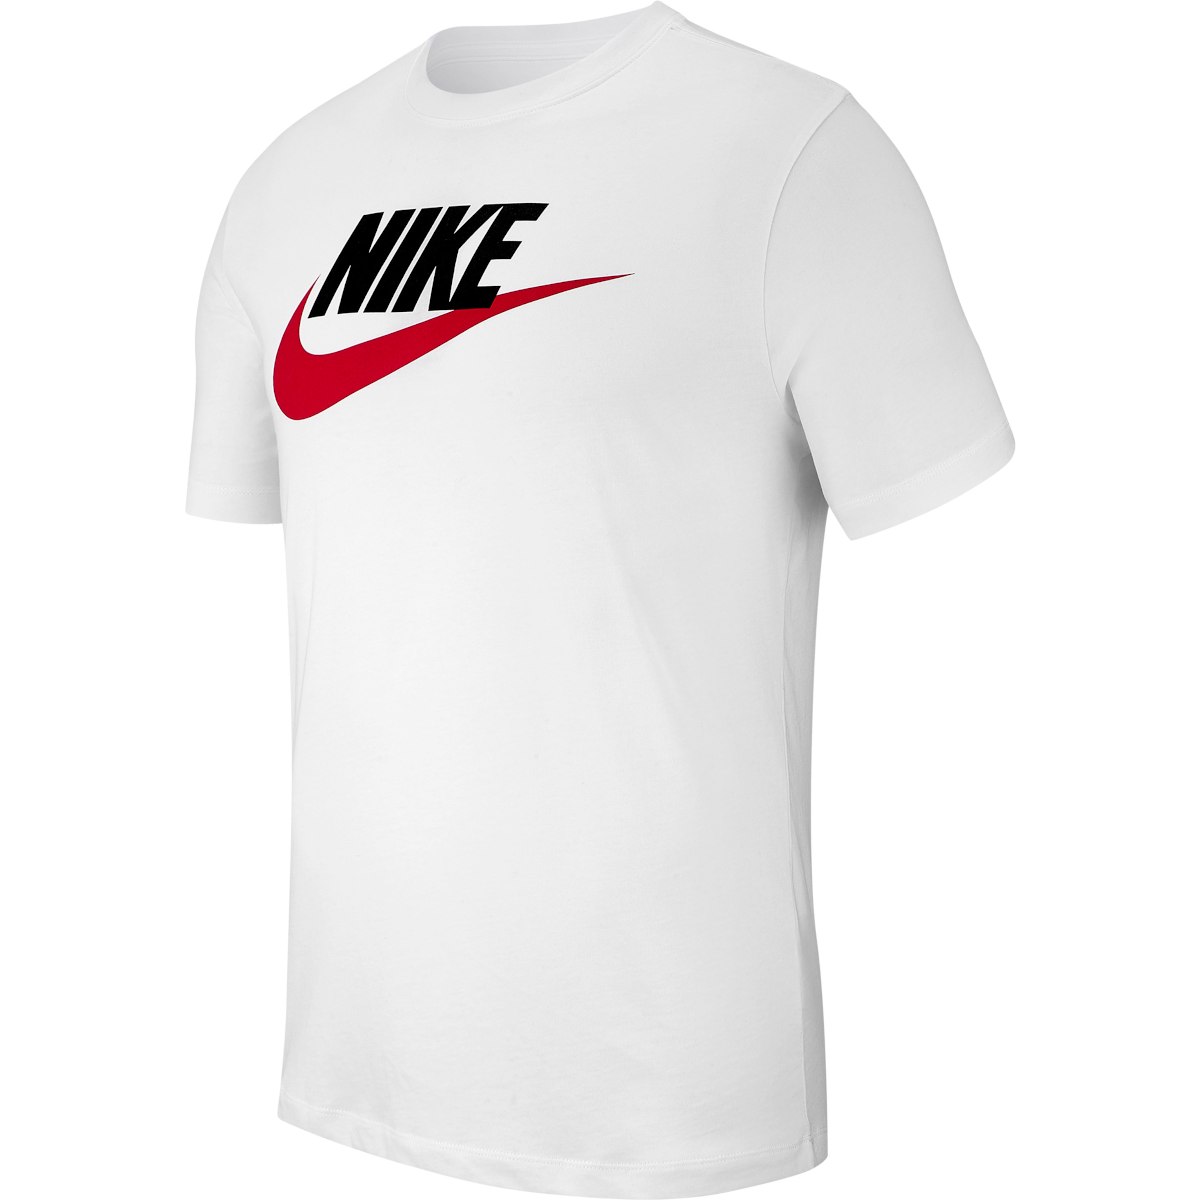 Immagine prodotto da Nike Maglietta Uomo - Sportswear Icon Futura - white/black/university red AR5004-100